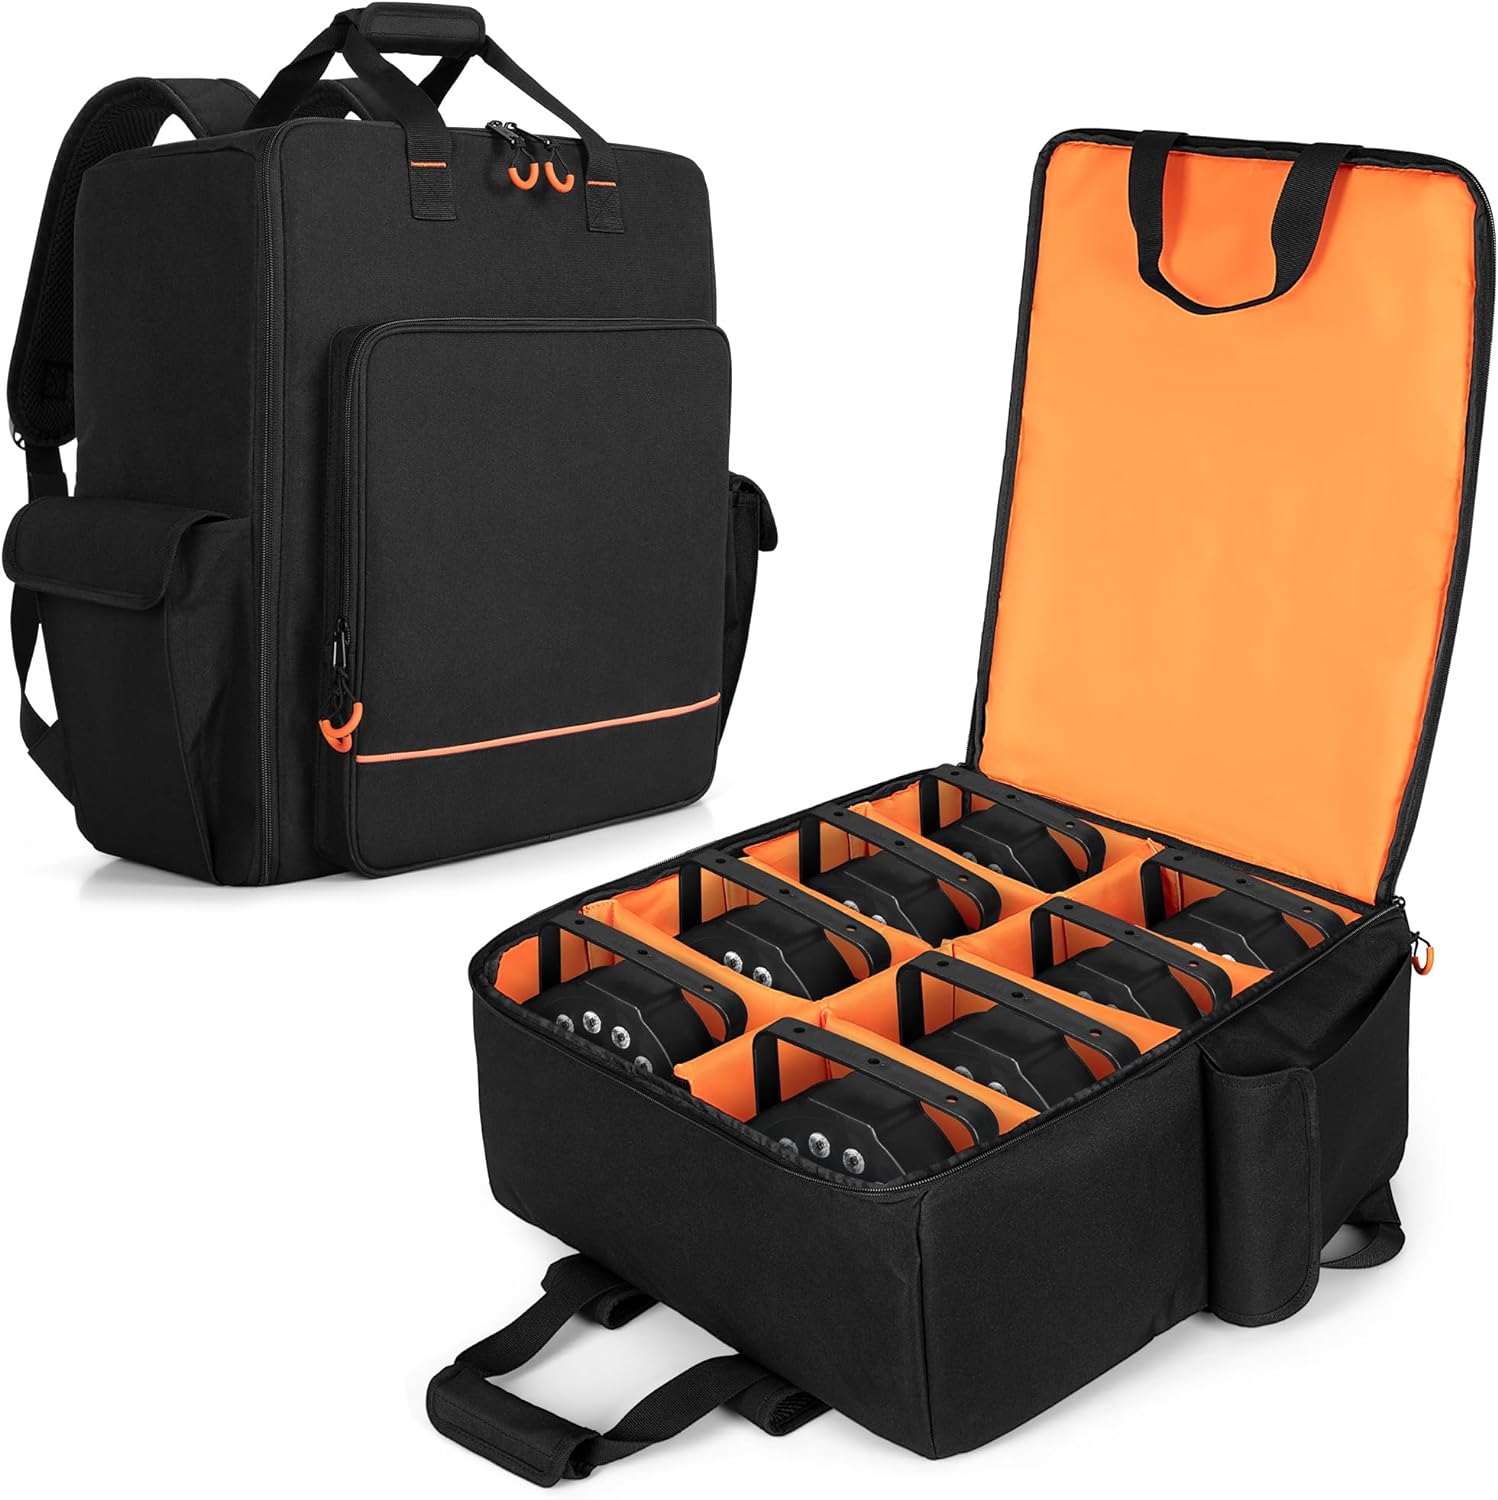 LUXJA Padded Par Light Bag (Backpack) Fits 8 Par Lights, Par Light Case with Inner Divider and Accessory Pockets, Black